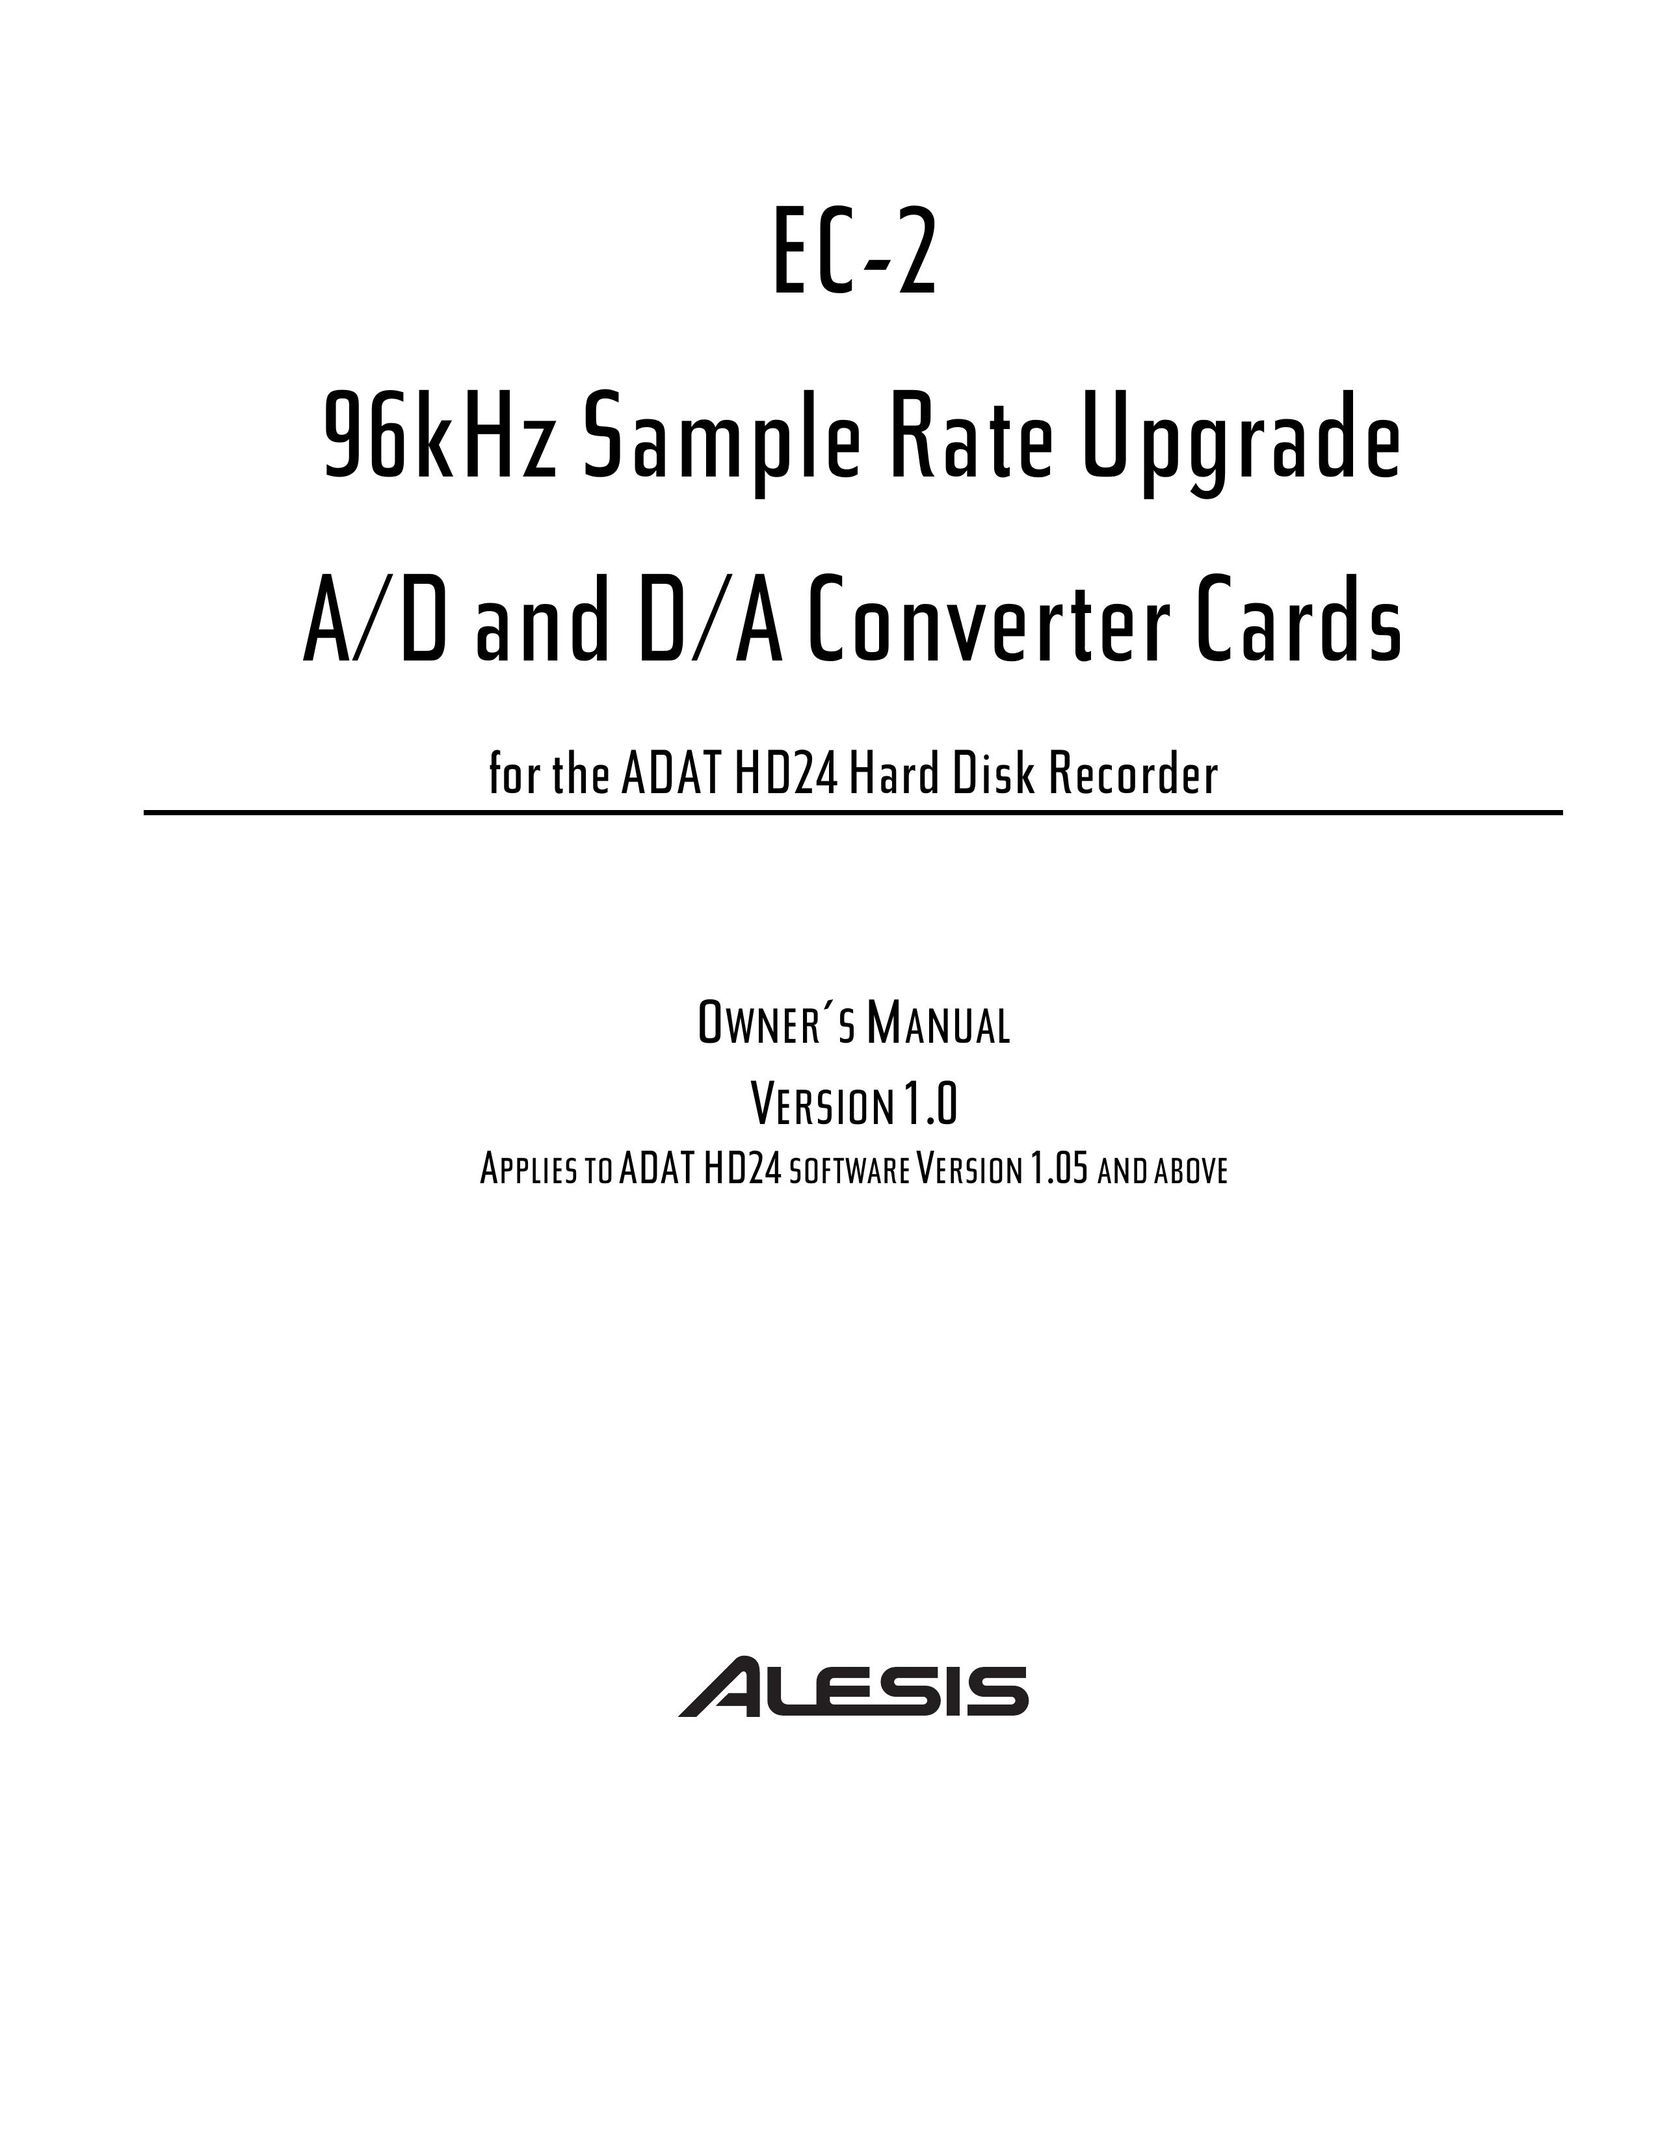 Alesis EC-2 Computer Drive User Manual